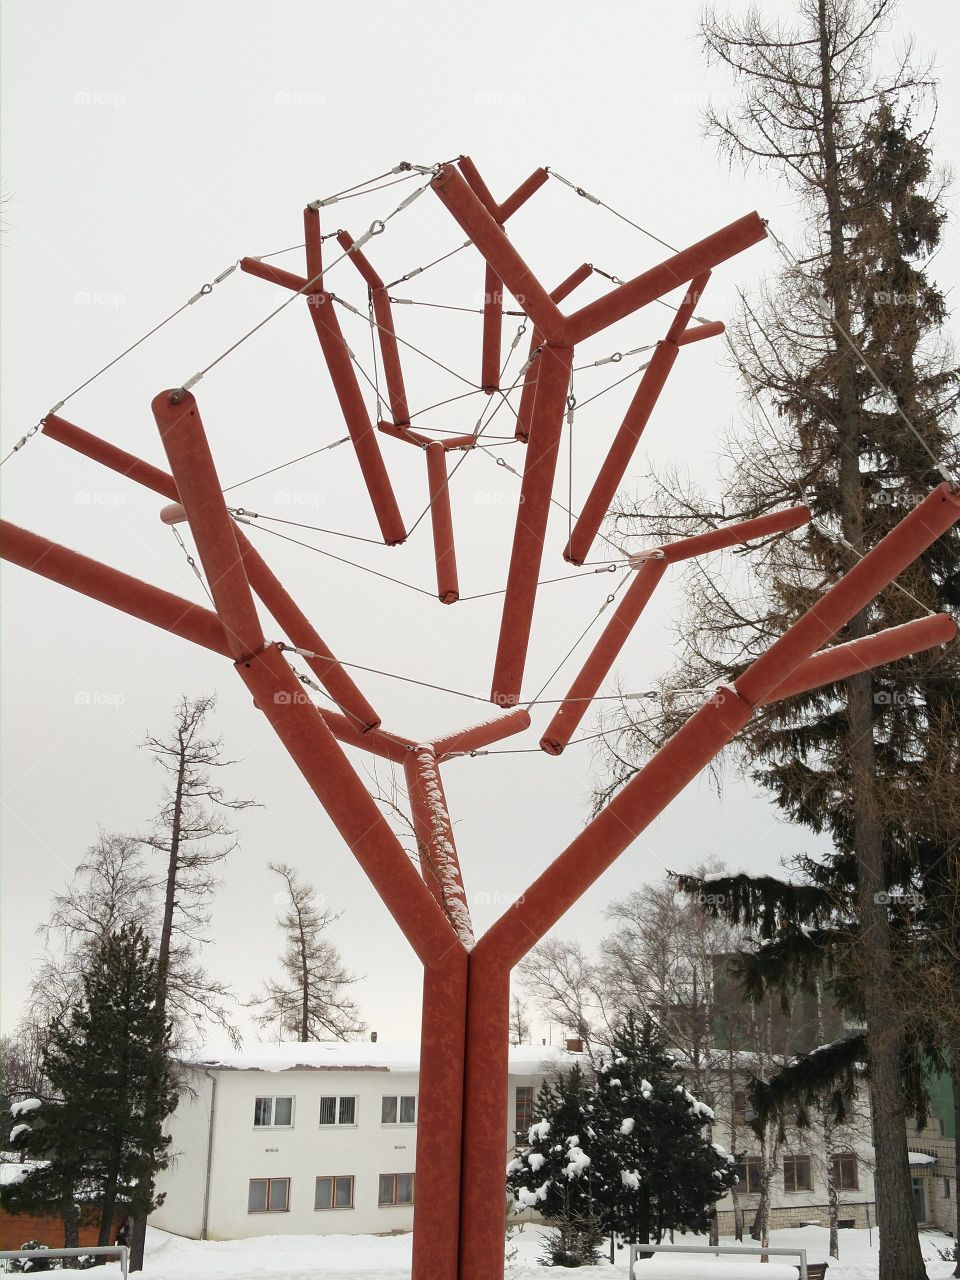 Fallen trees memorial